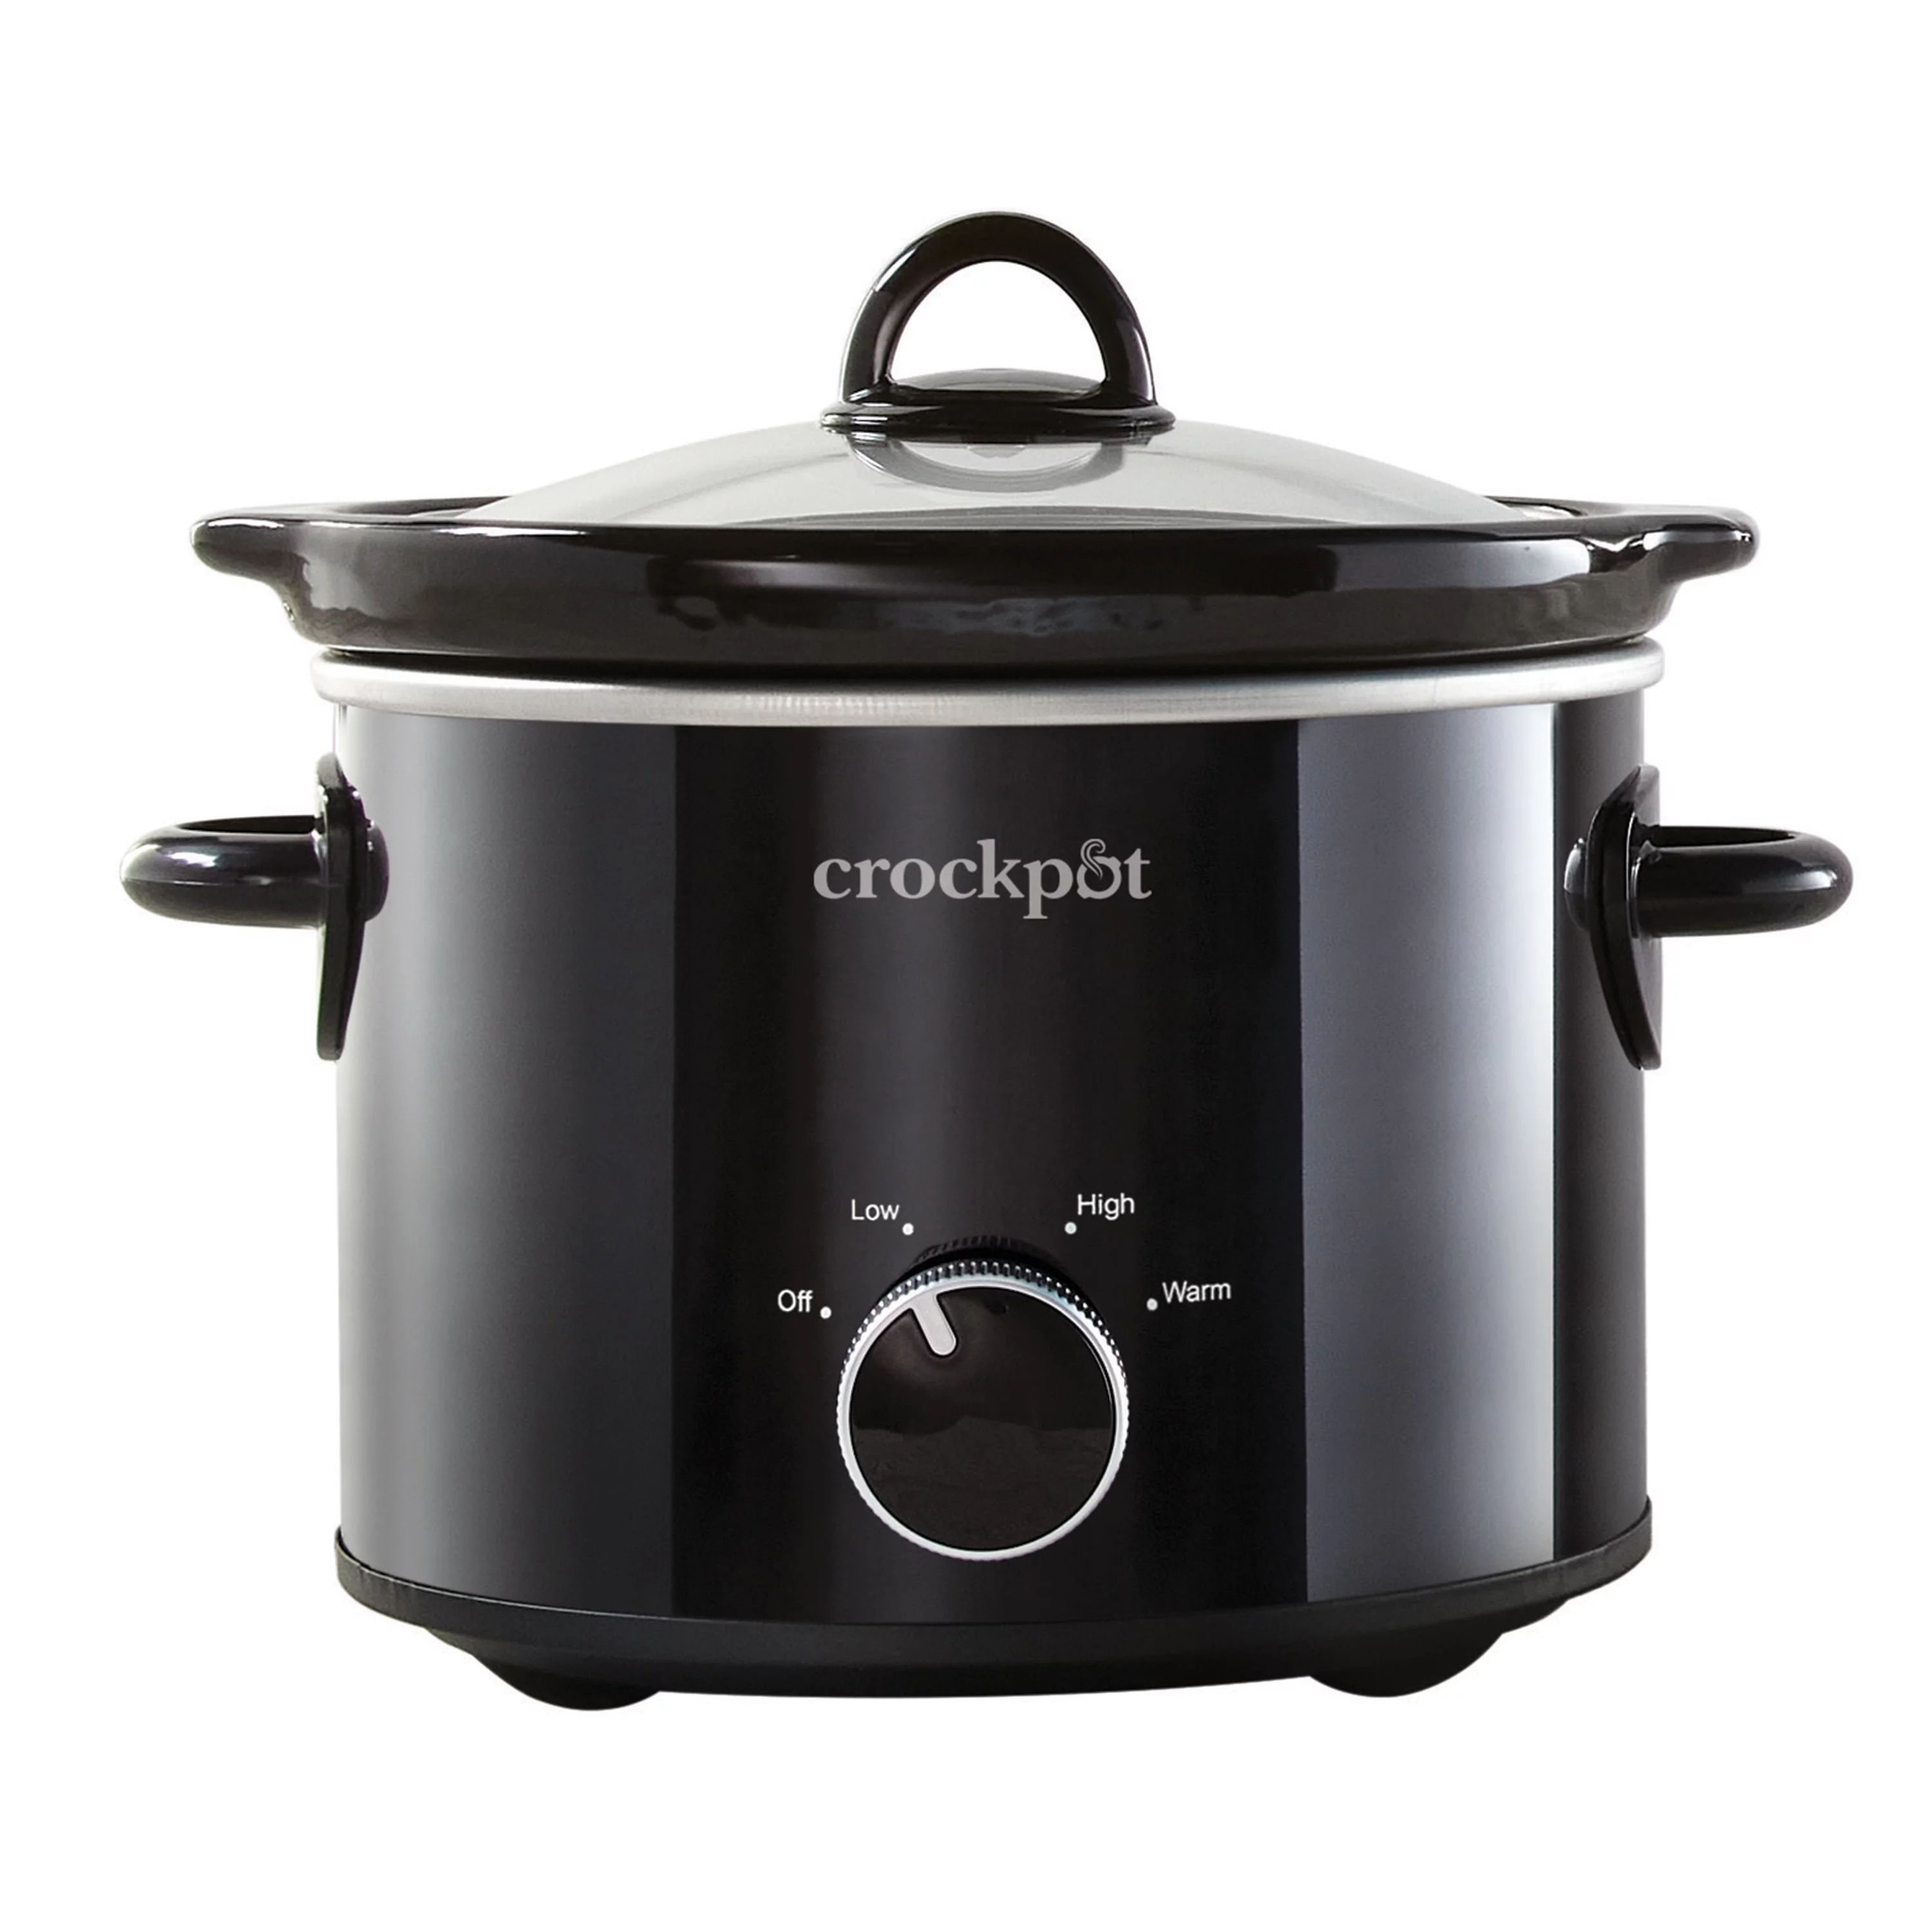 Crock Pot SCCPVP400-PY Smart-Pot 4-Quart Digital Slow Cooker 